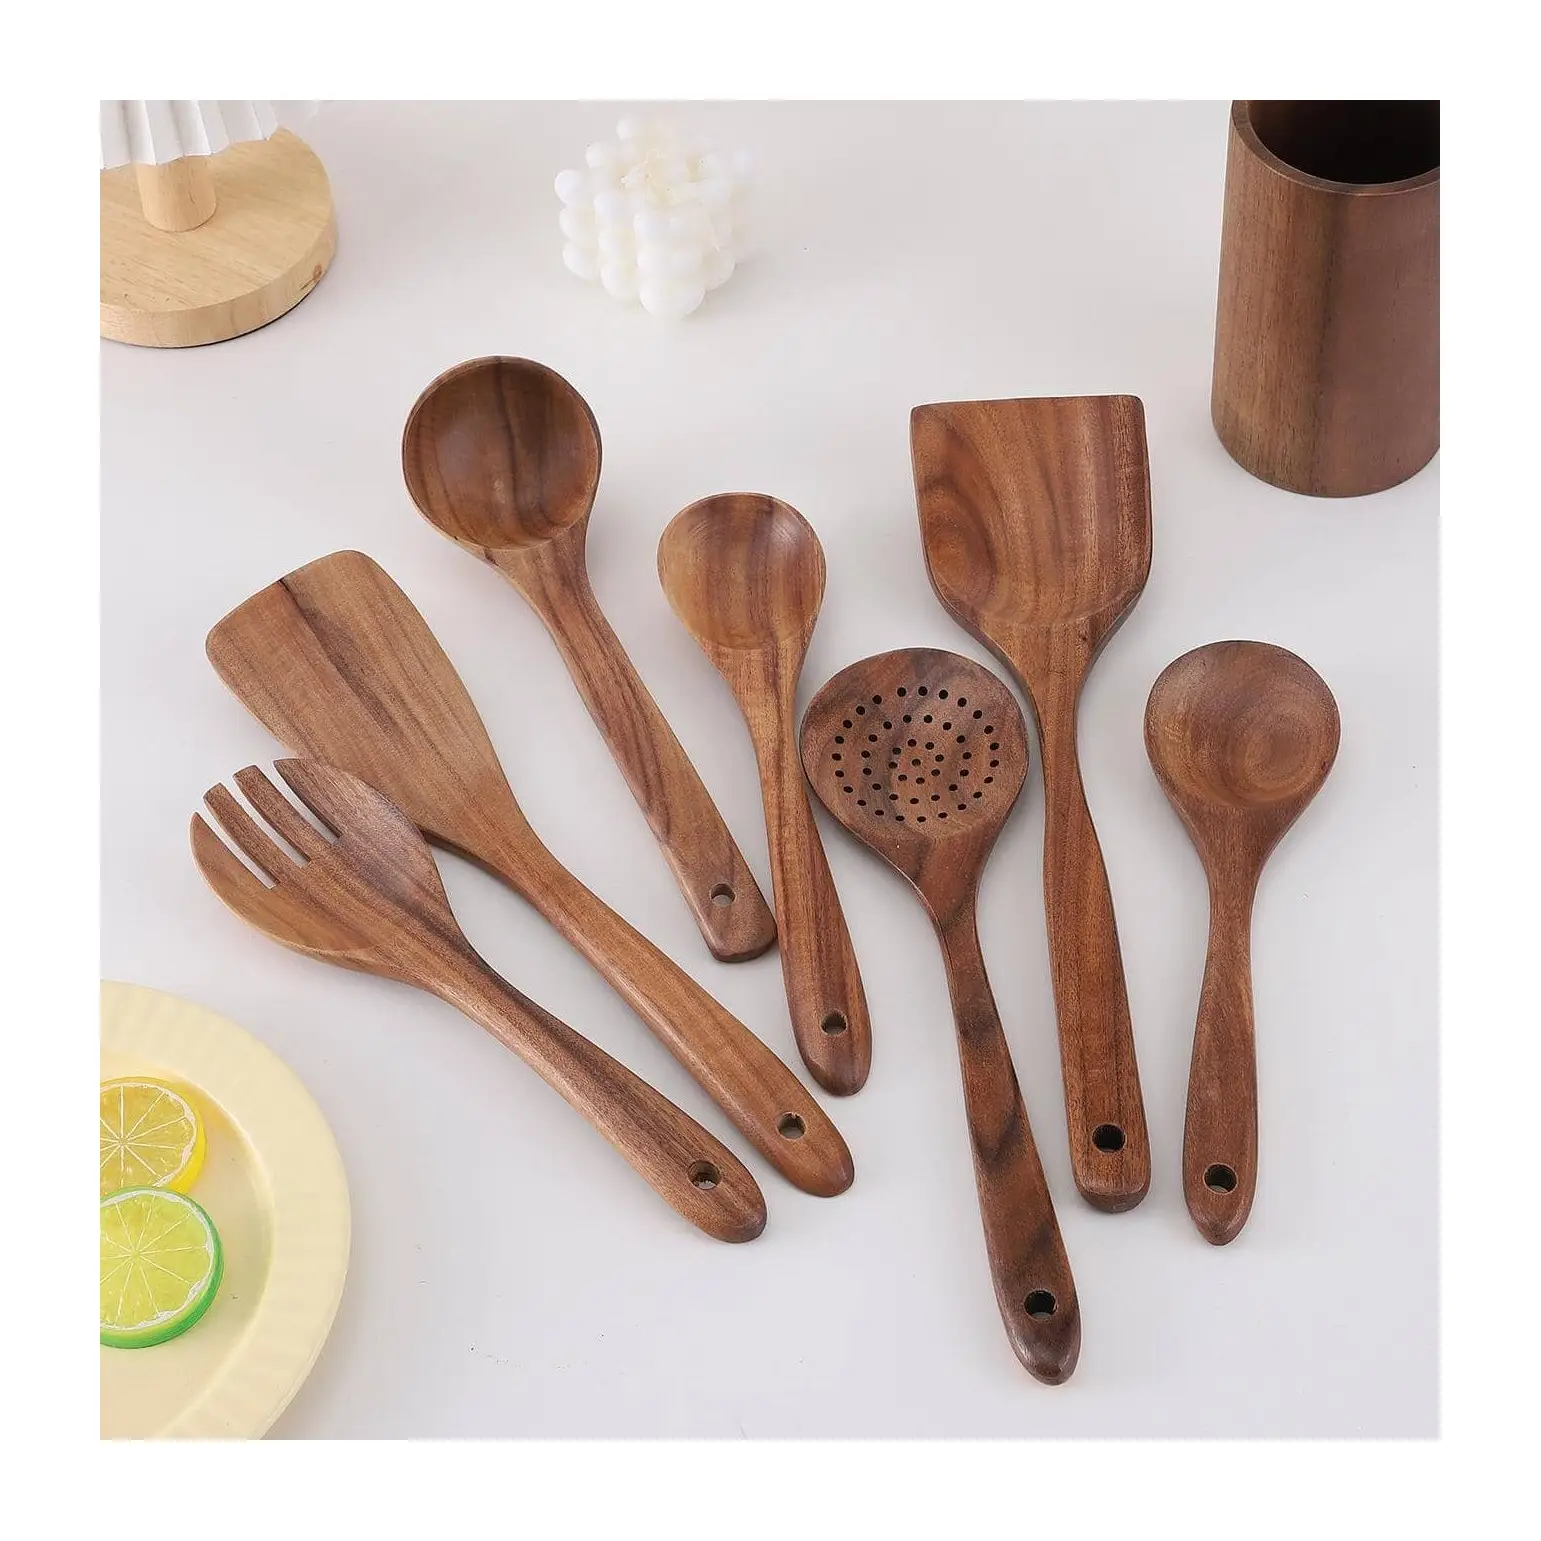 Peralatan masak aksesoris dapur rumah tangga, spatula kayu, set peralatan masak dengan ukiran logo kustom